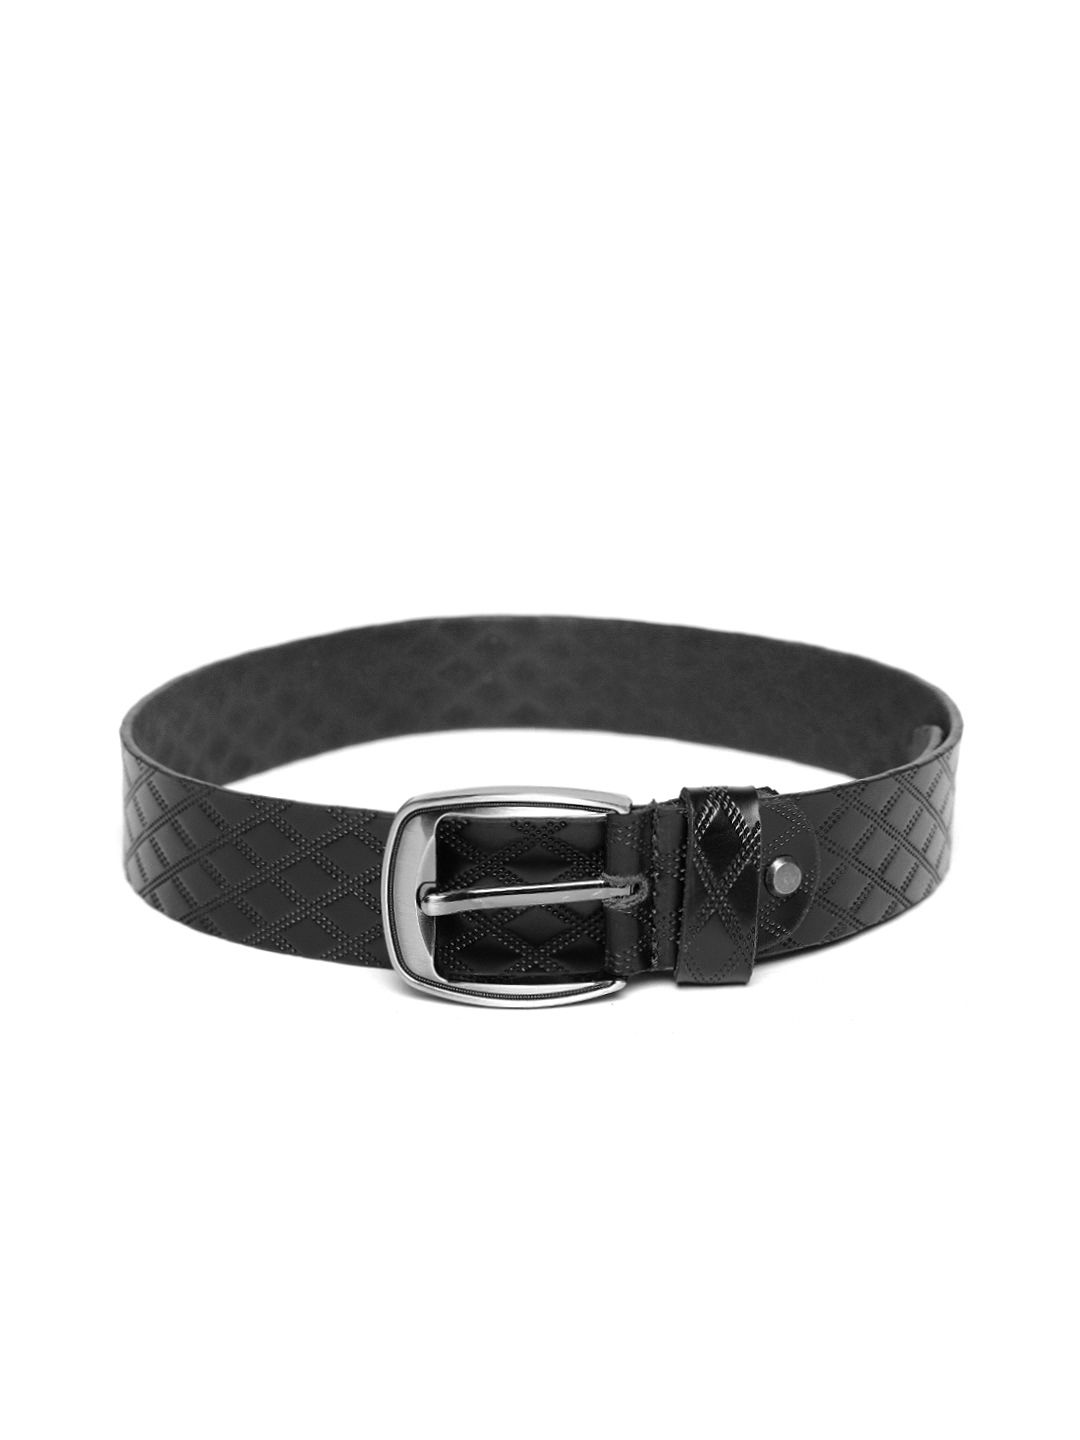 Buy Roadster Men Black Textured Genuine Leather Belt - Belts for Men ...